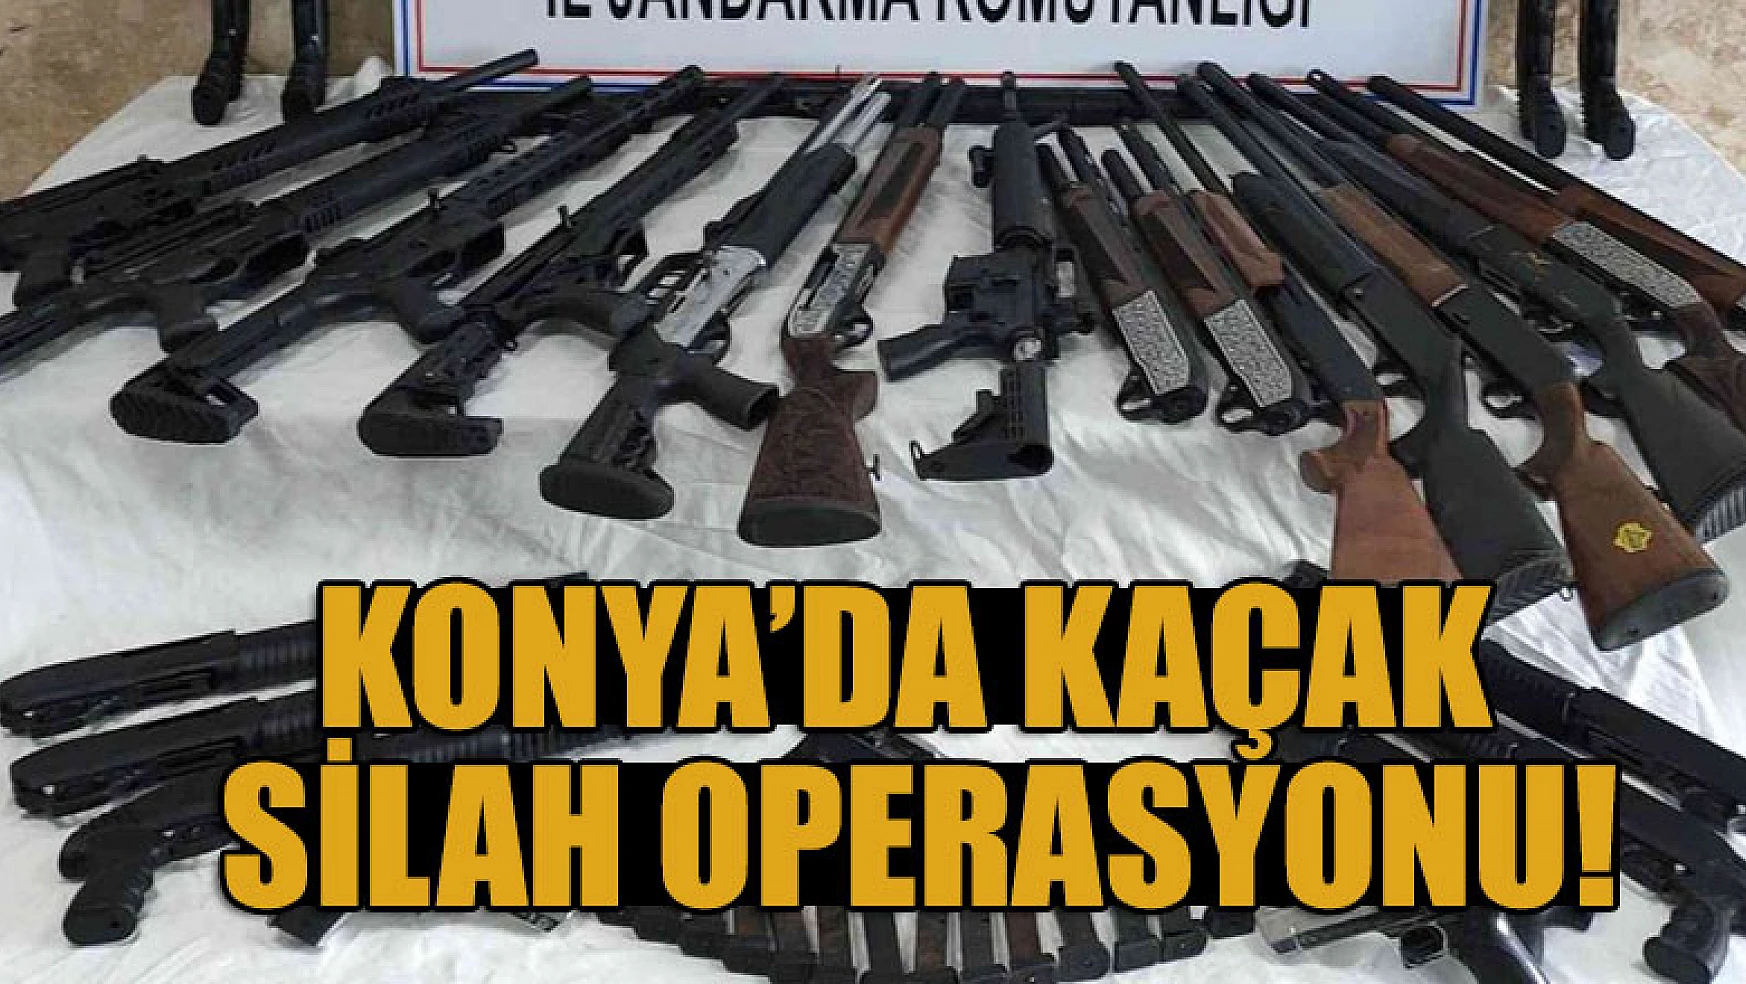 Konya'da kaçak silah operasyonu!